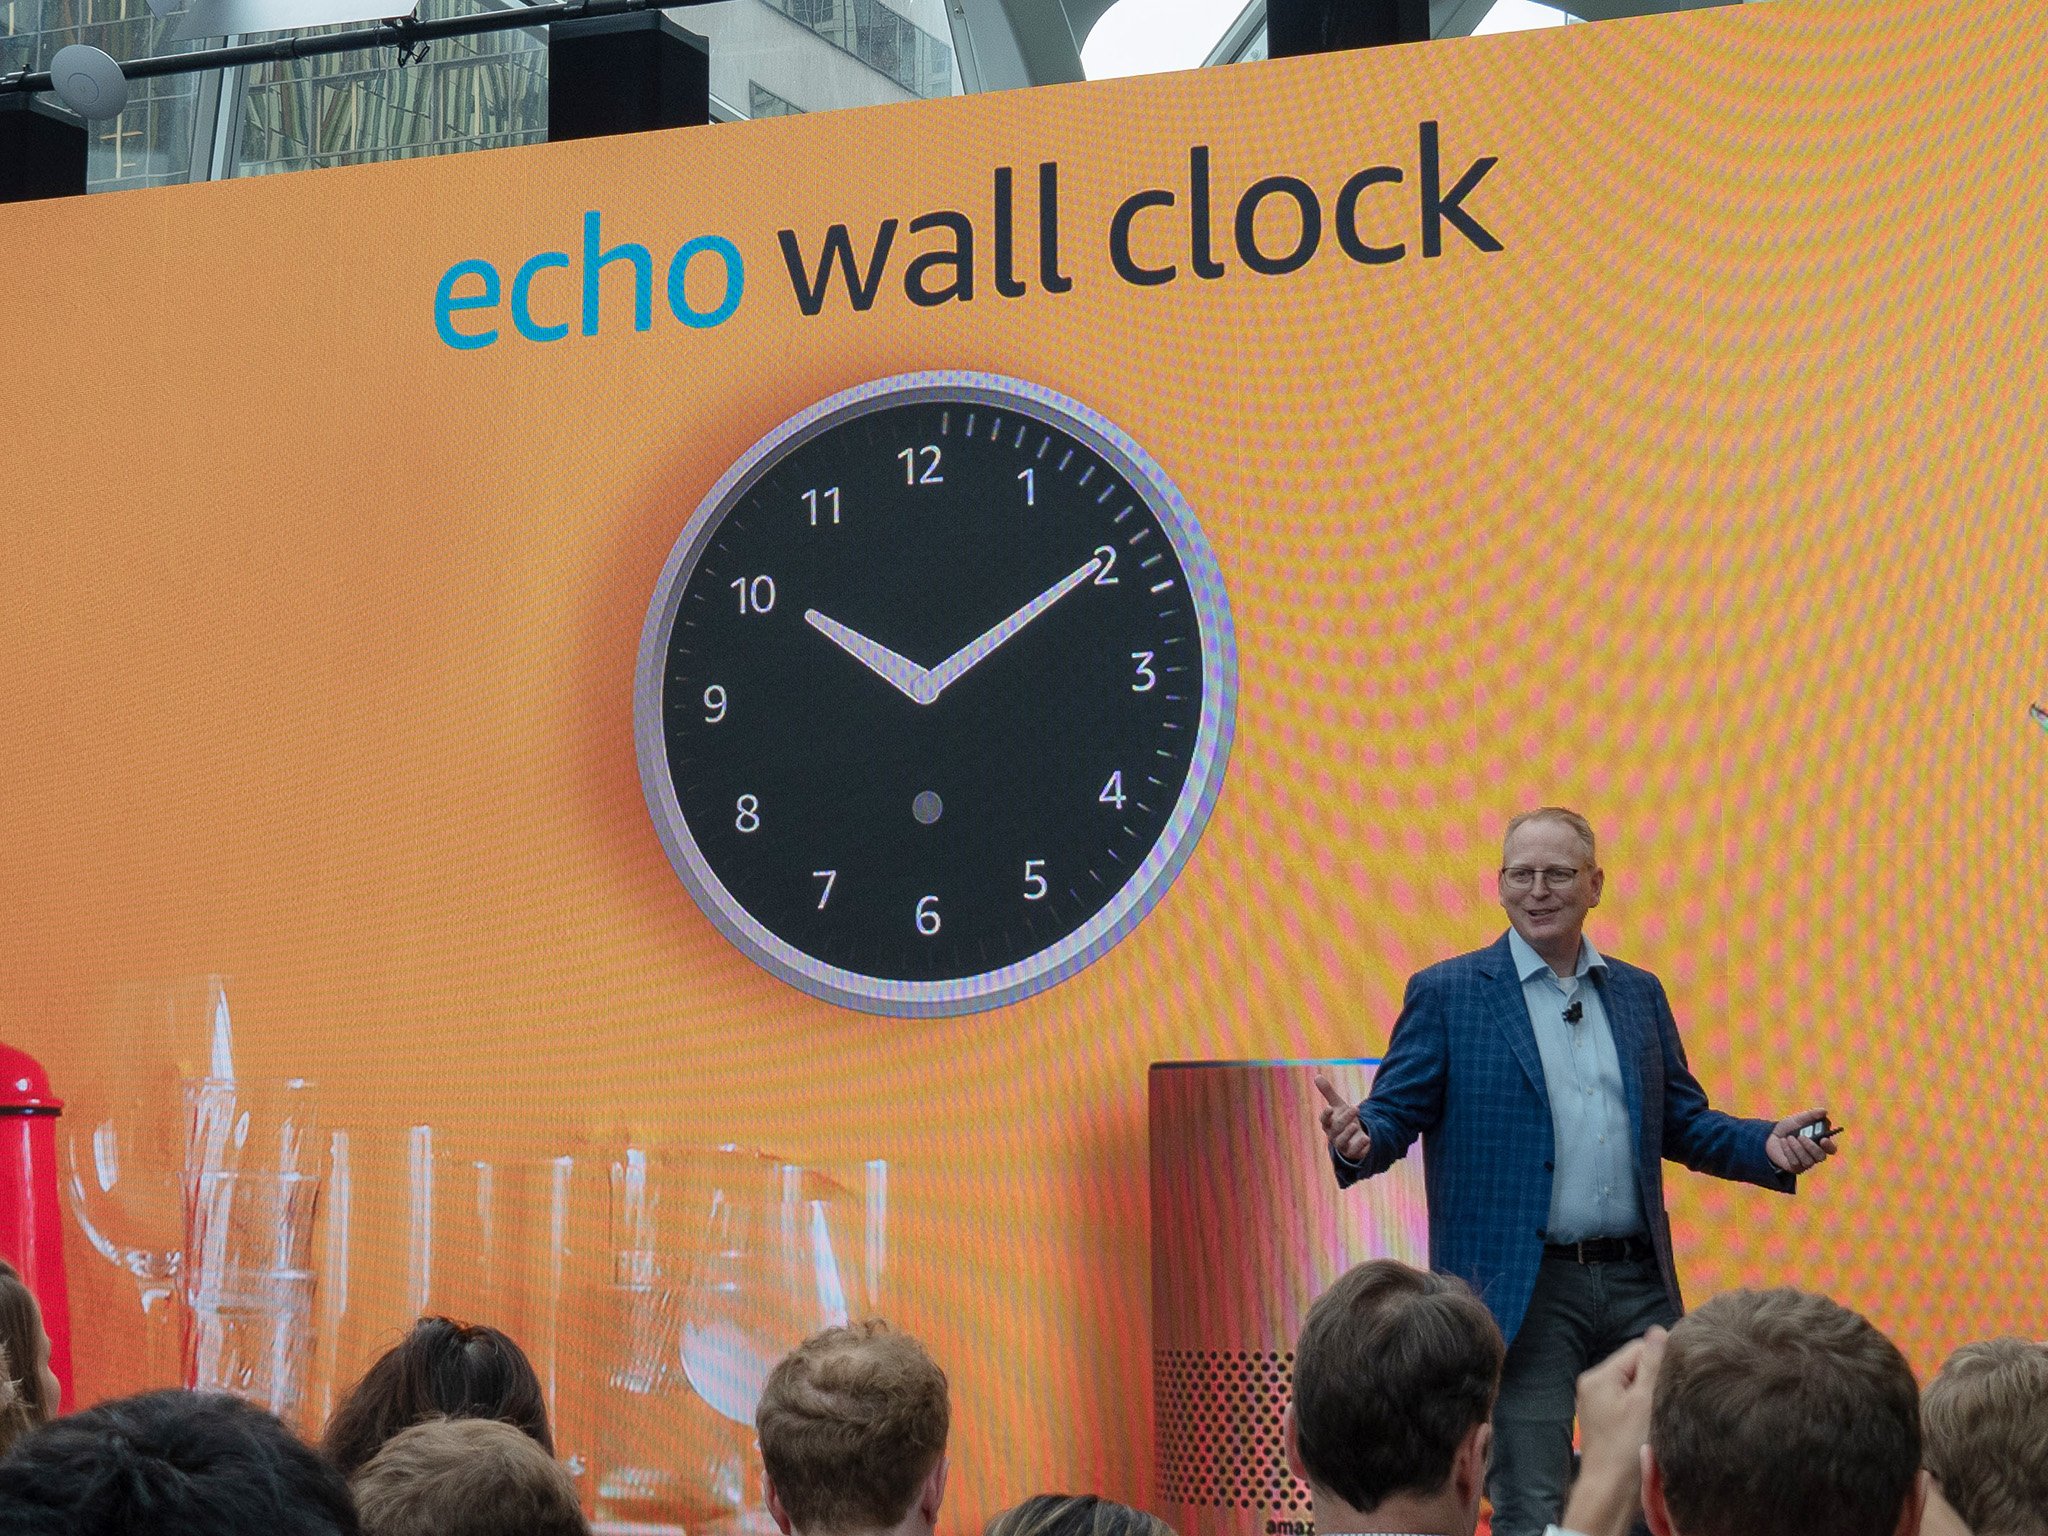 A new era of wall clocks